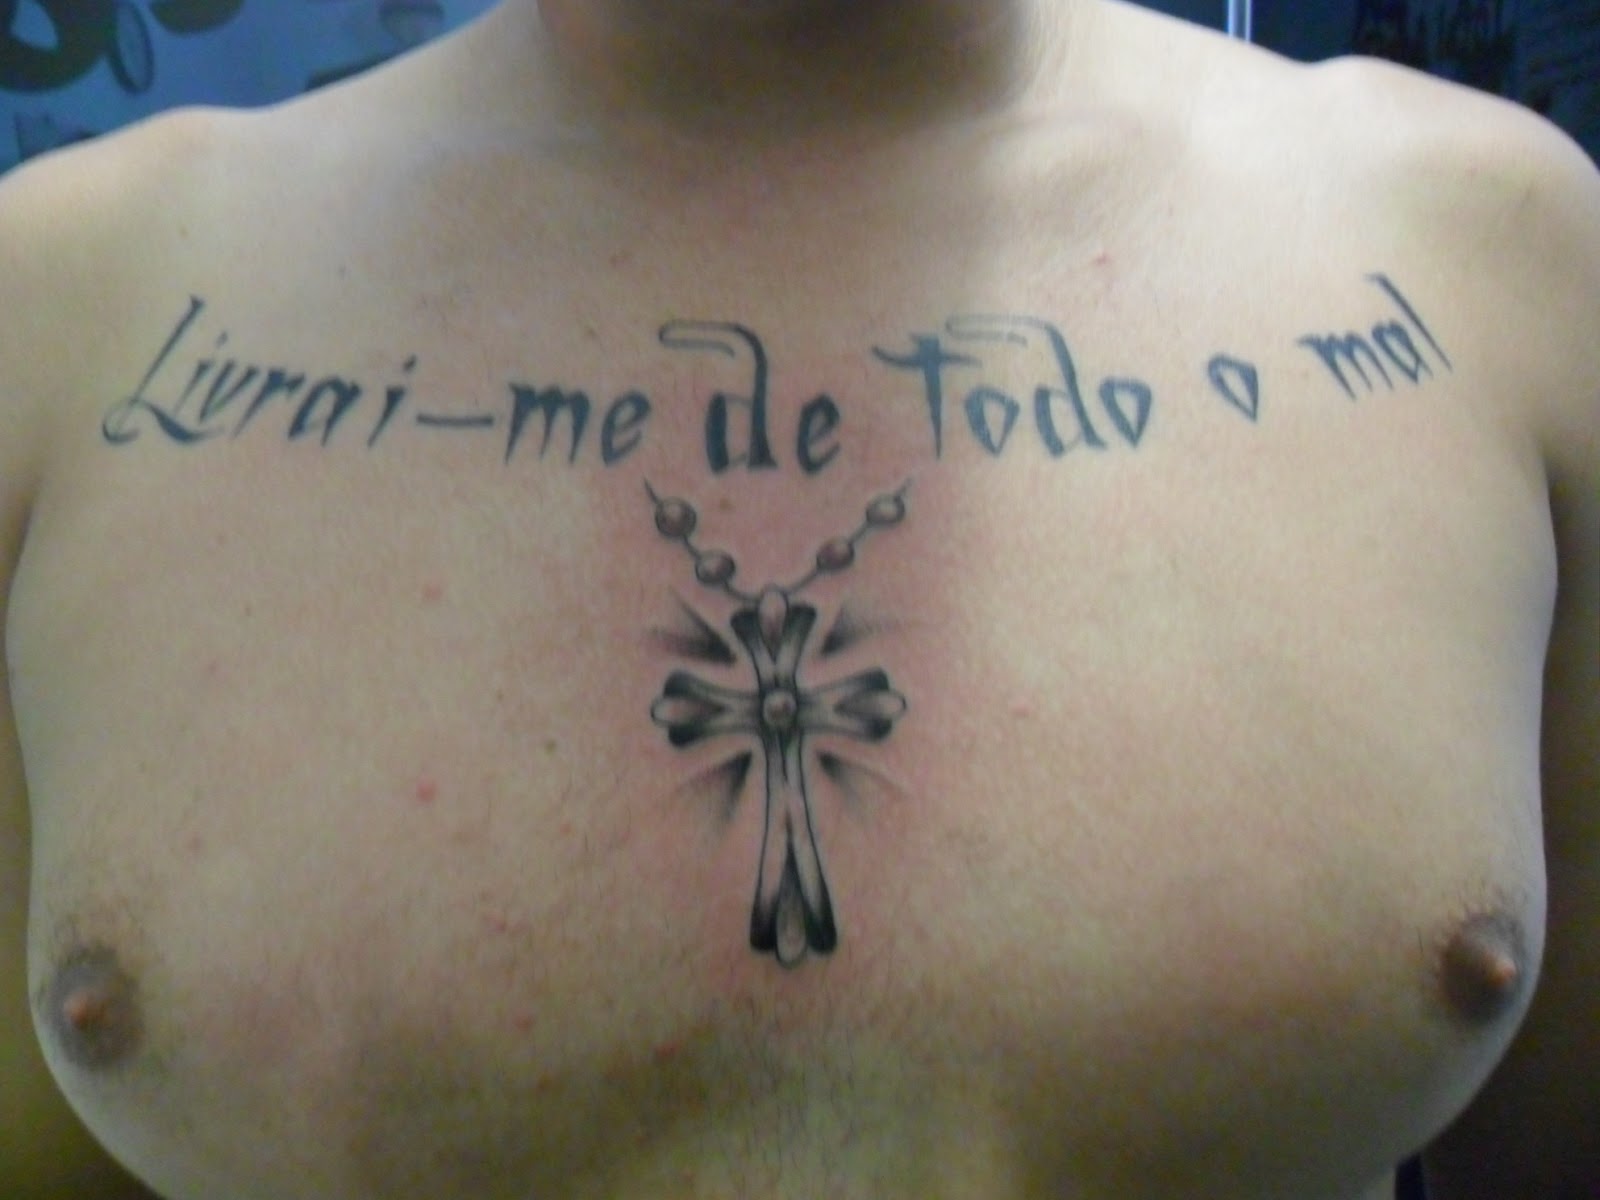 Leco's Tattoo: Frase com cruz